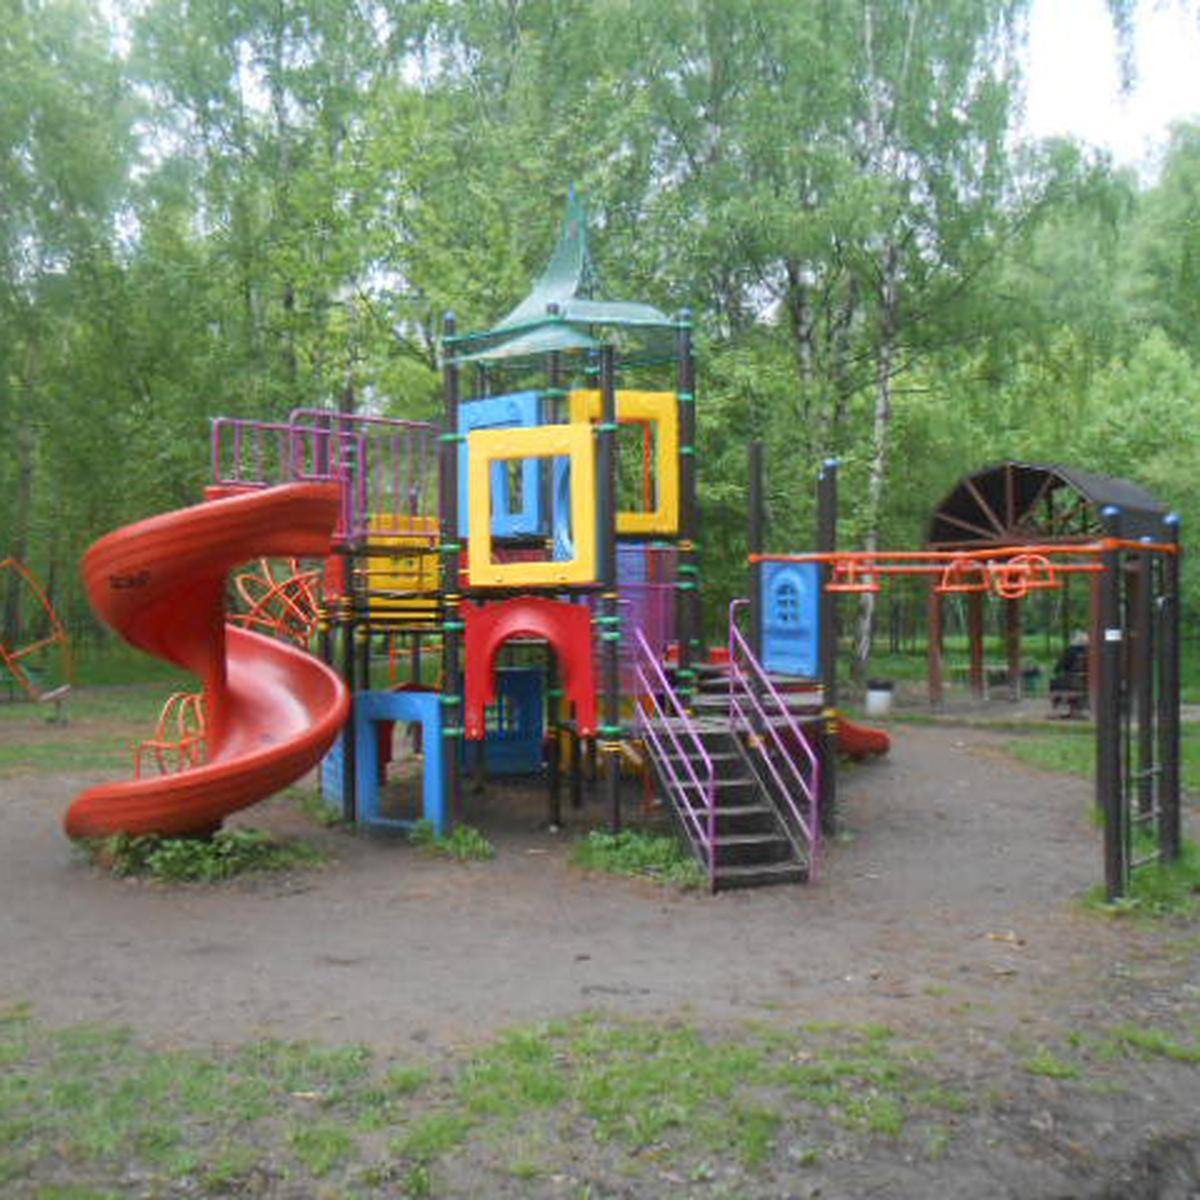 Фото: Детская игровая площадка №1, Лианозовский лесопарк